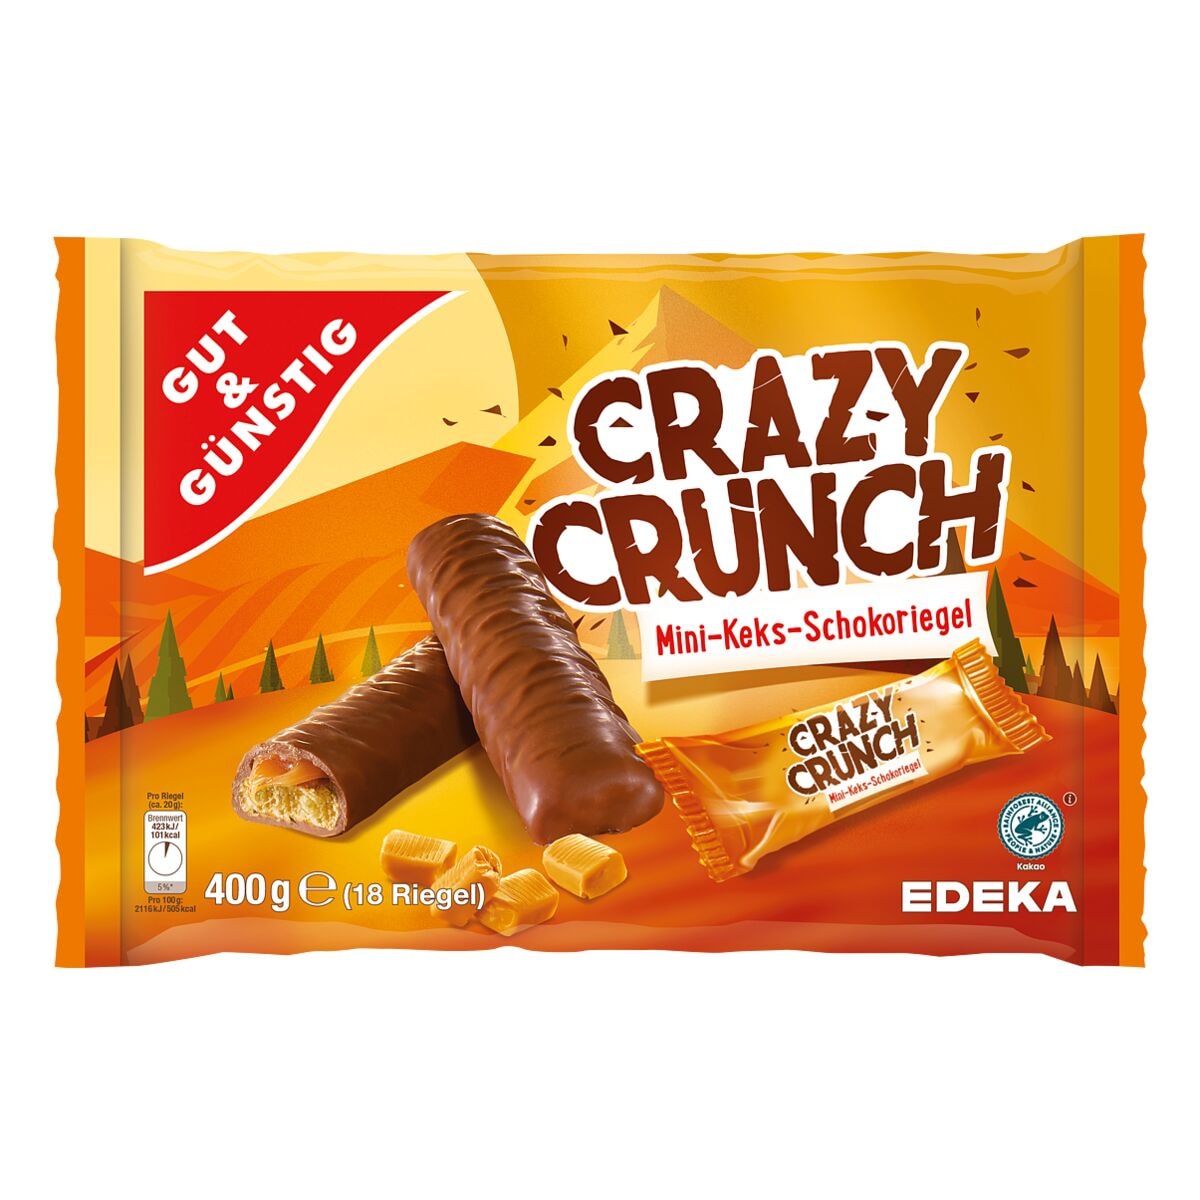 Gut und Gnstig Mini-Keks-Schokoriegel Crazy Crunch 400 g